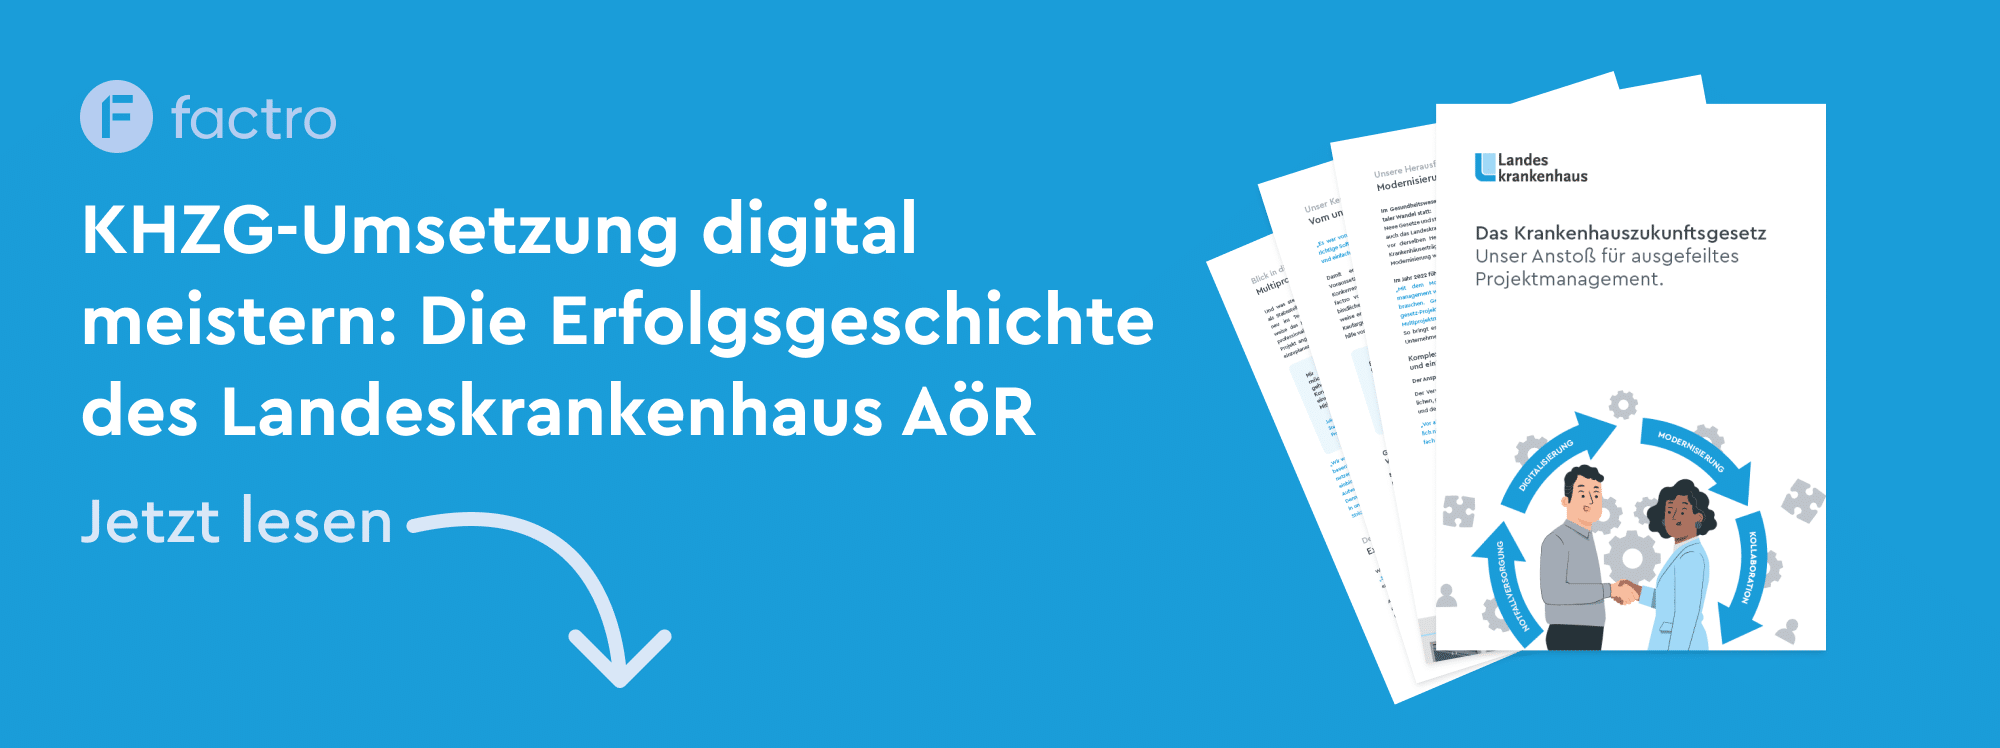 Eine Grafik mit dem Text "KHZG-Umsetzung digital meistern: Die Erfolgsgeschichte des Landeskrankenhaus AöR! Jetzt lesen"